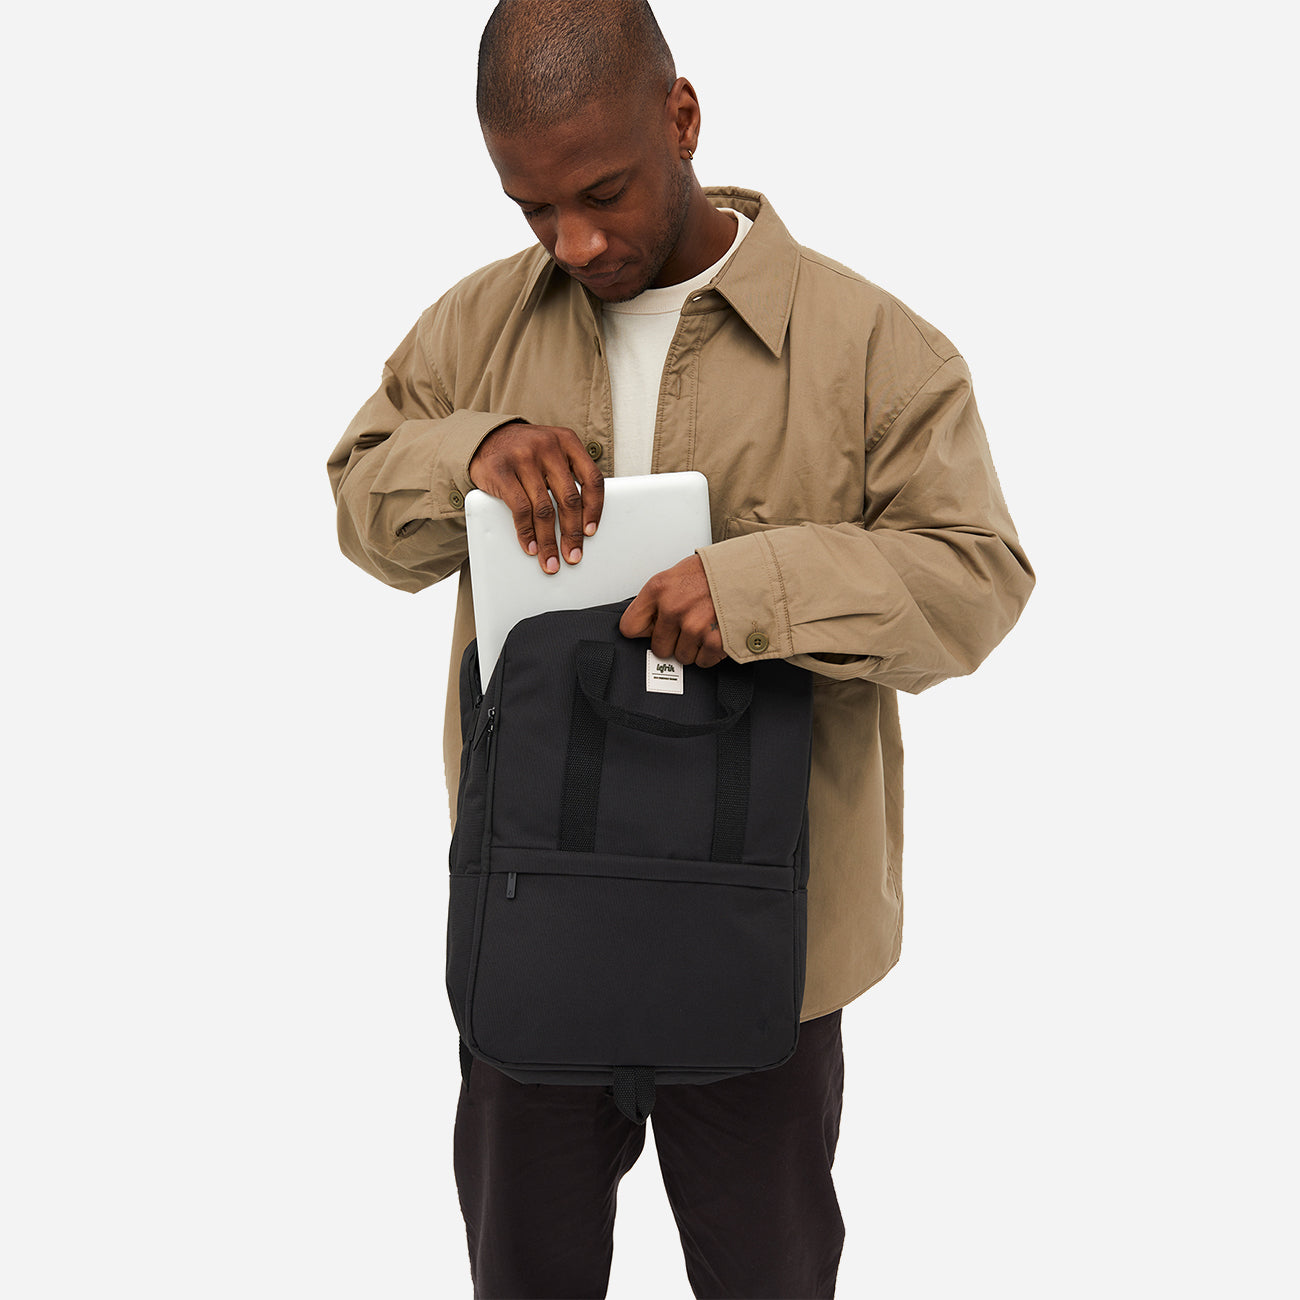 Homme rangeant un ordinateur portable dans un sac à dos urbain noir durable